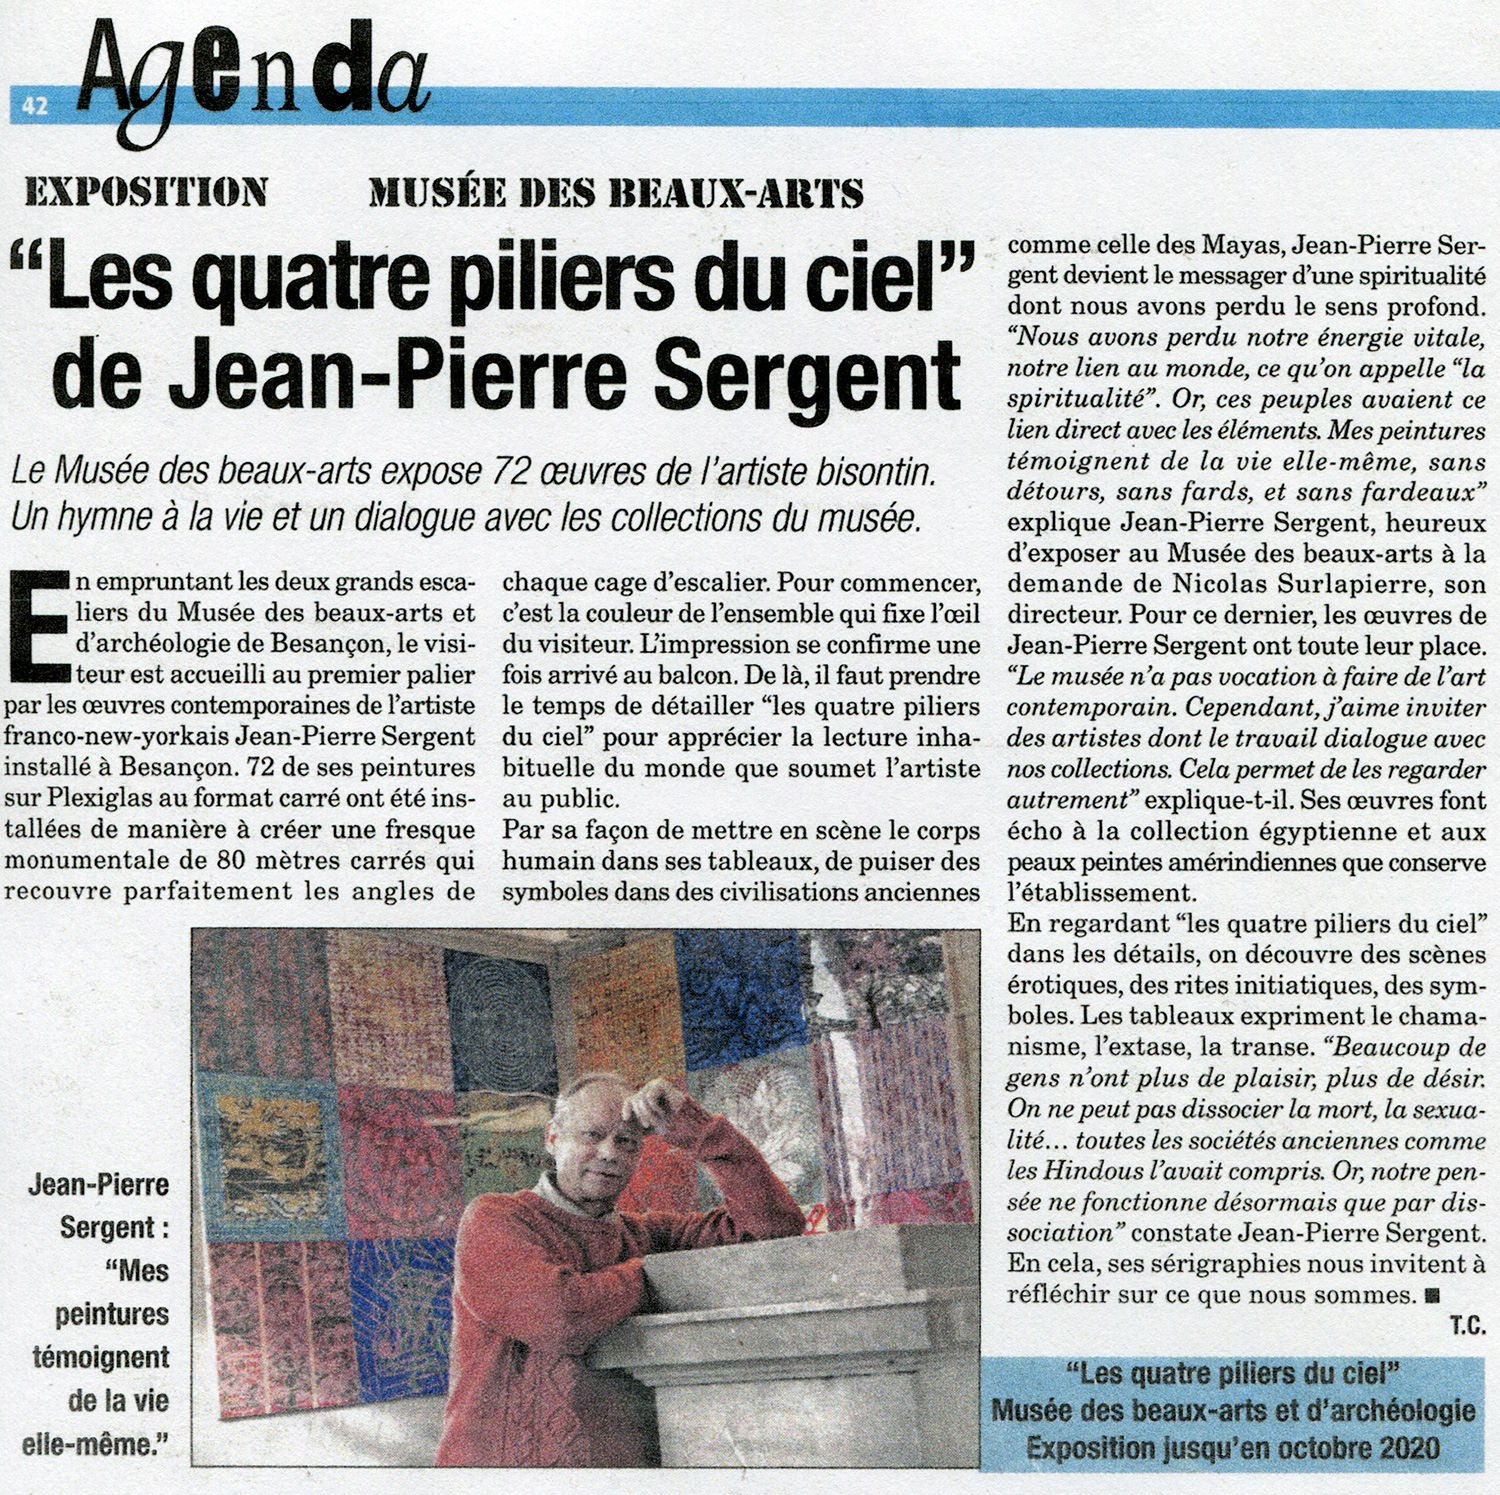 EXPOSITION AU MUSÉE DES BEAUX-ARTS "Les quatre piliers du ciel" de Jean-Pierre Sergent, par Thomas Comte pour La presse Bisontine, décembre 2019.